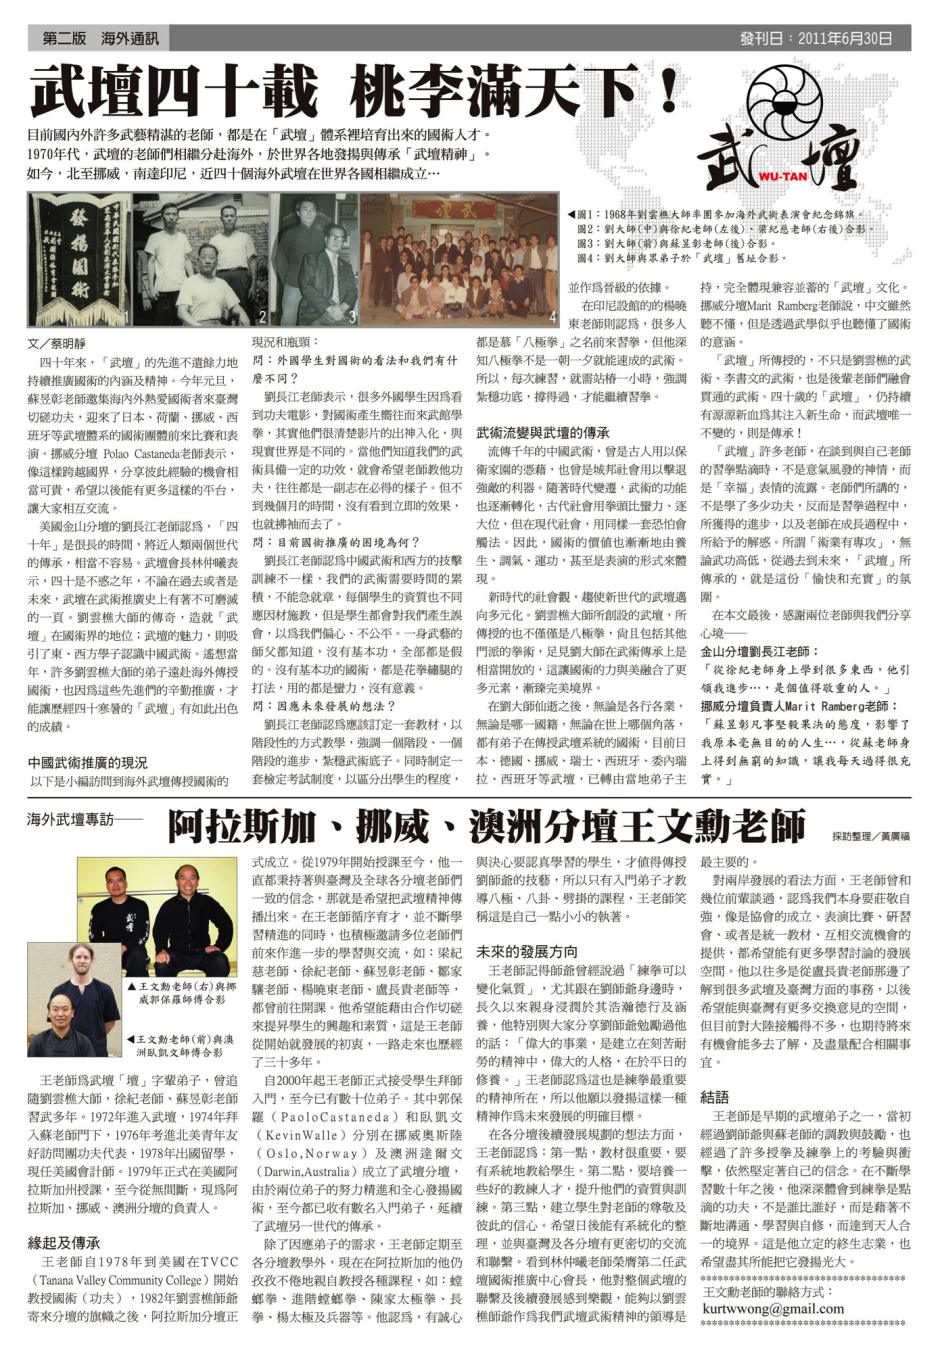 photo-image of magazine article